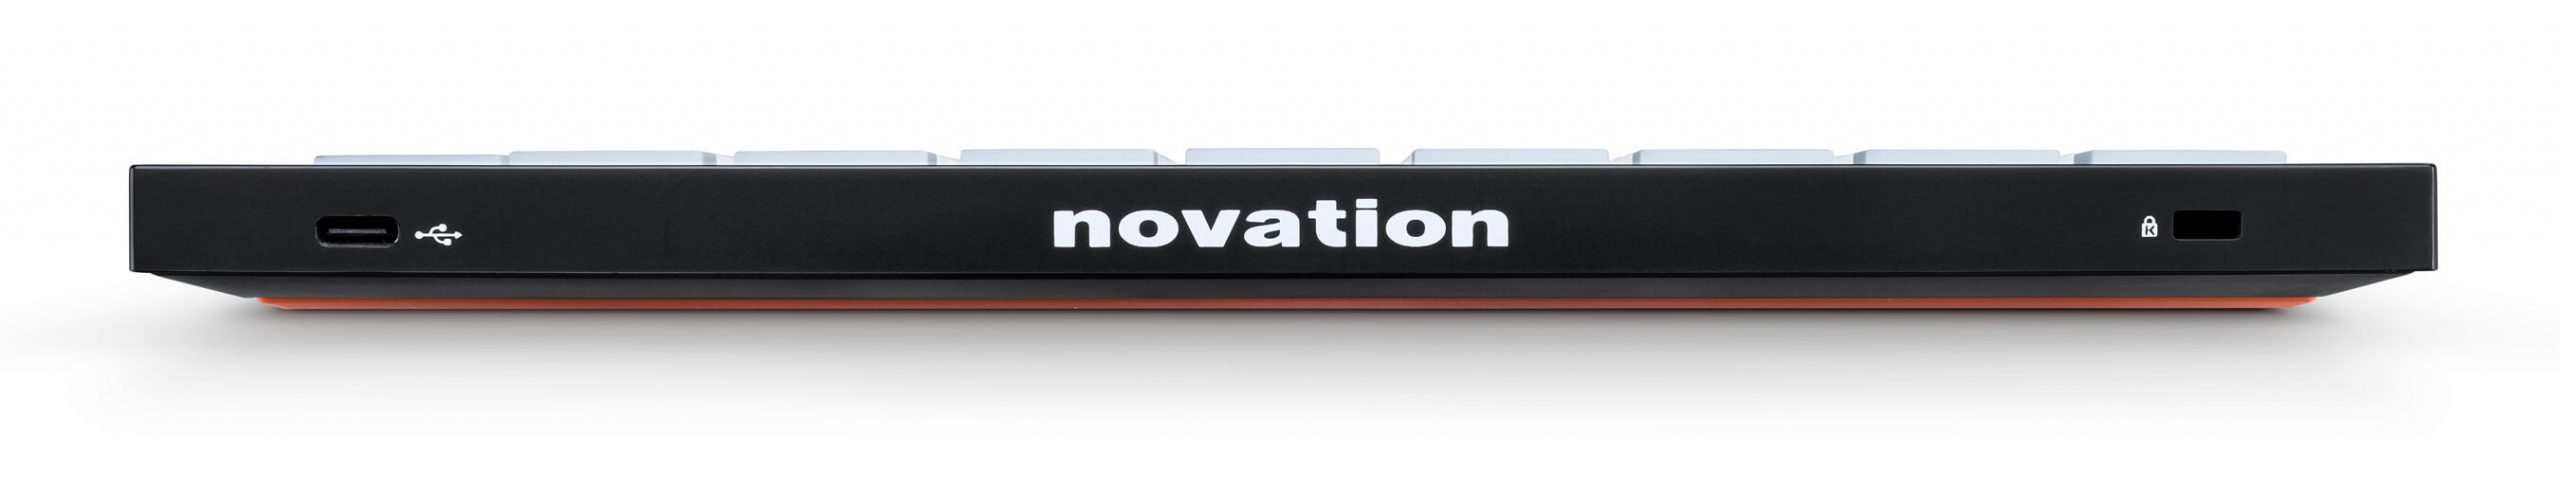 Novation-Launchpad-X-Diamu